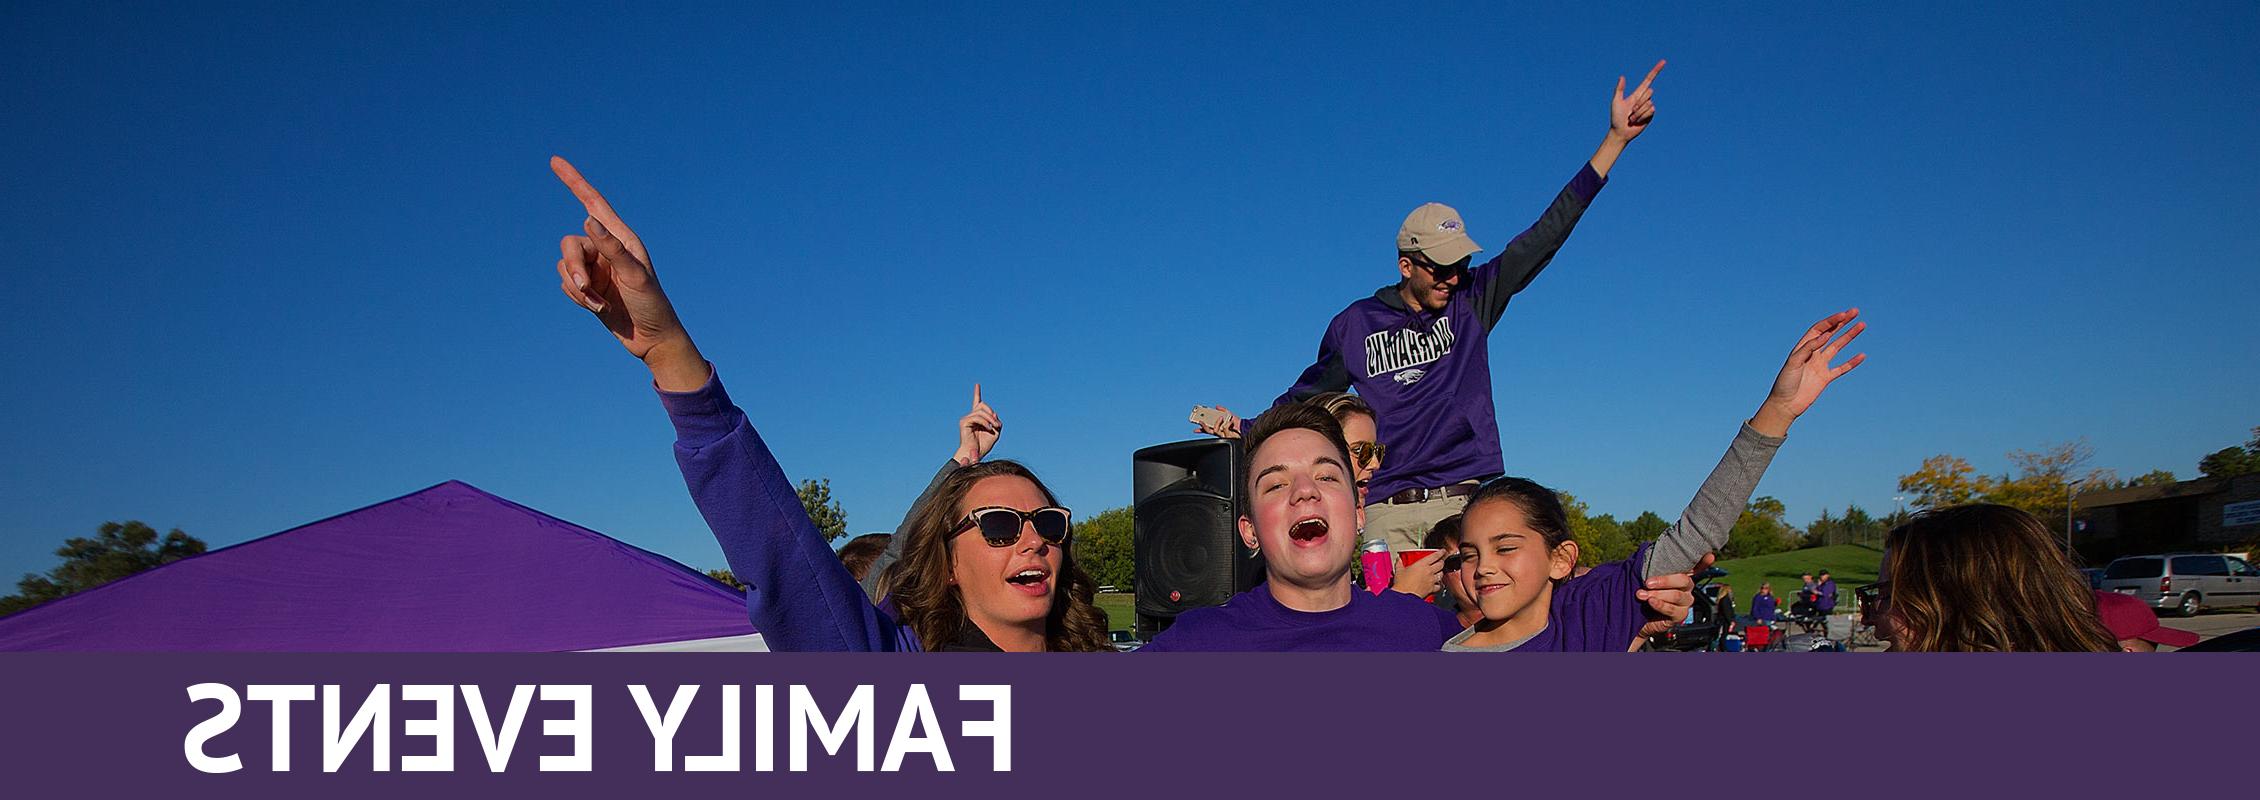 家庭活动:一家人穿着紫色衣服，唱着歌或喊着，双手高举